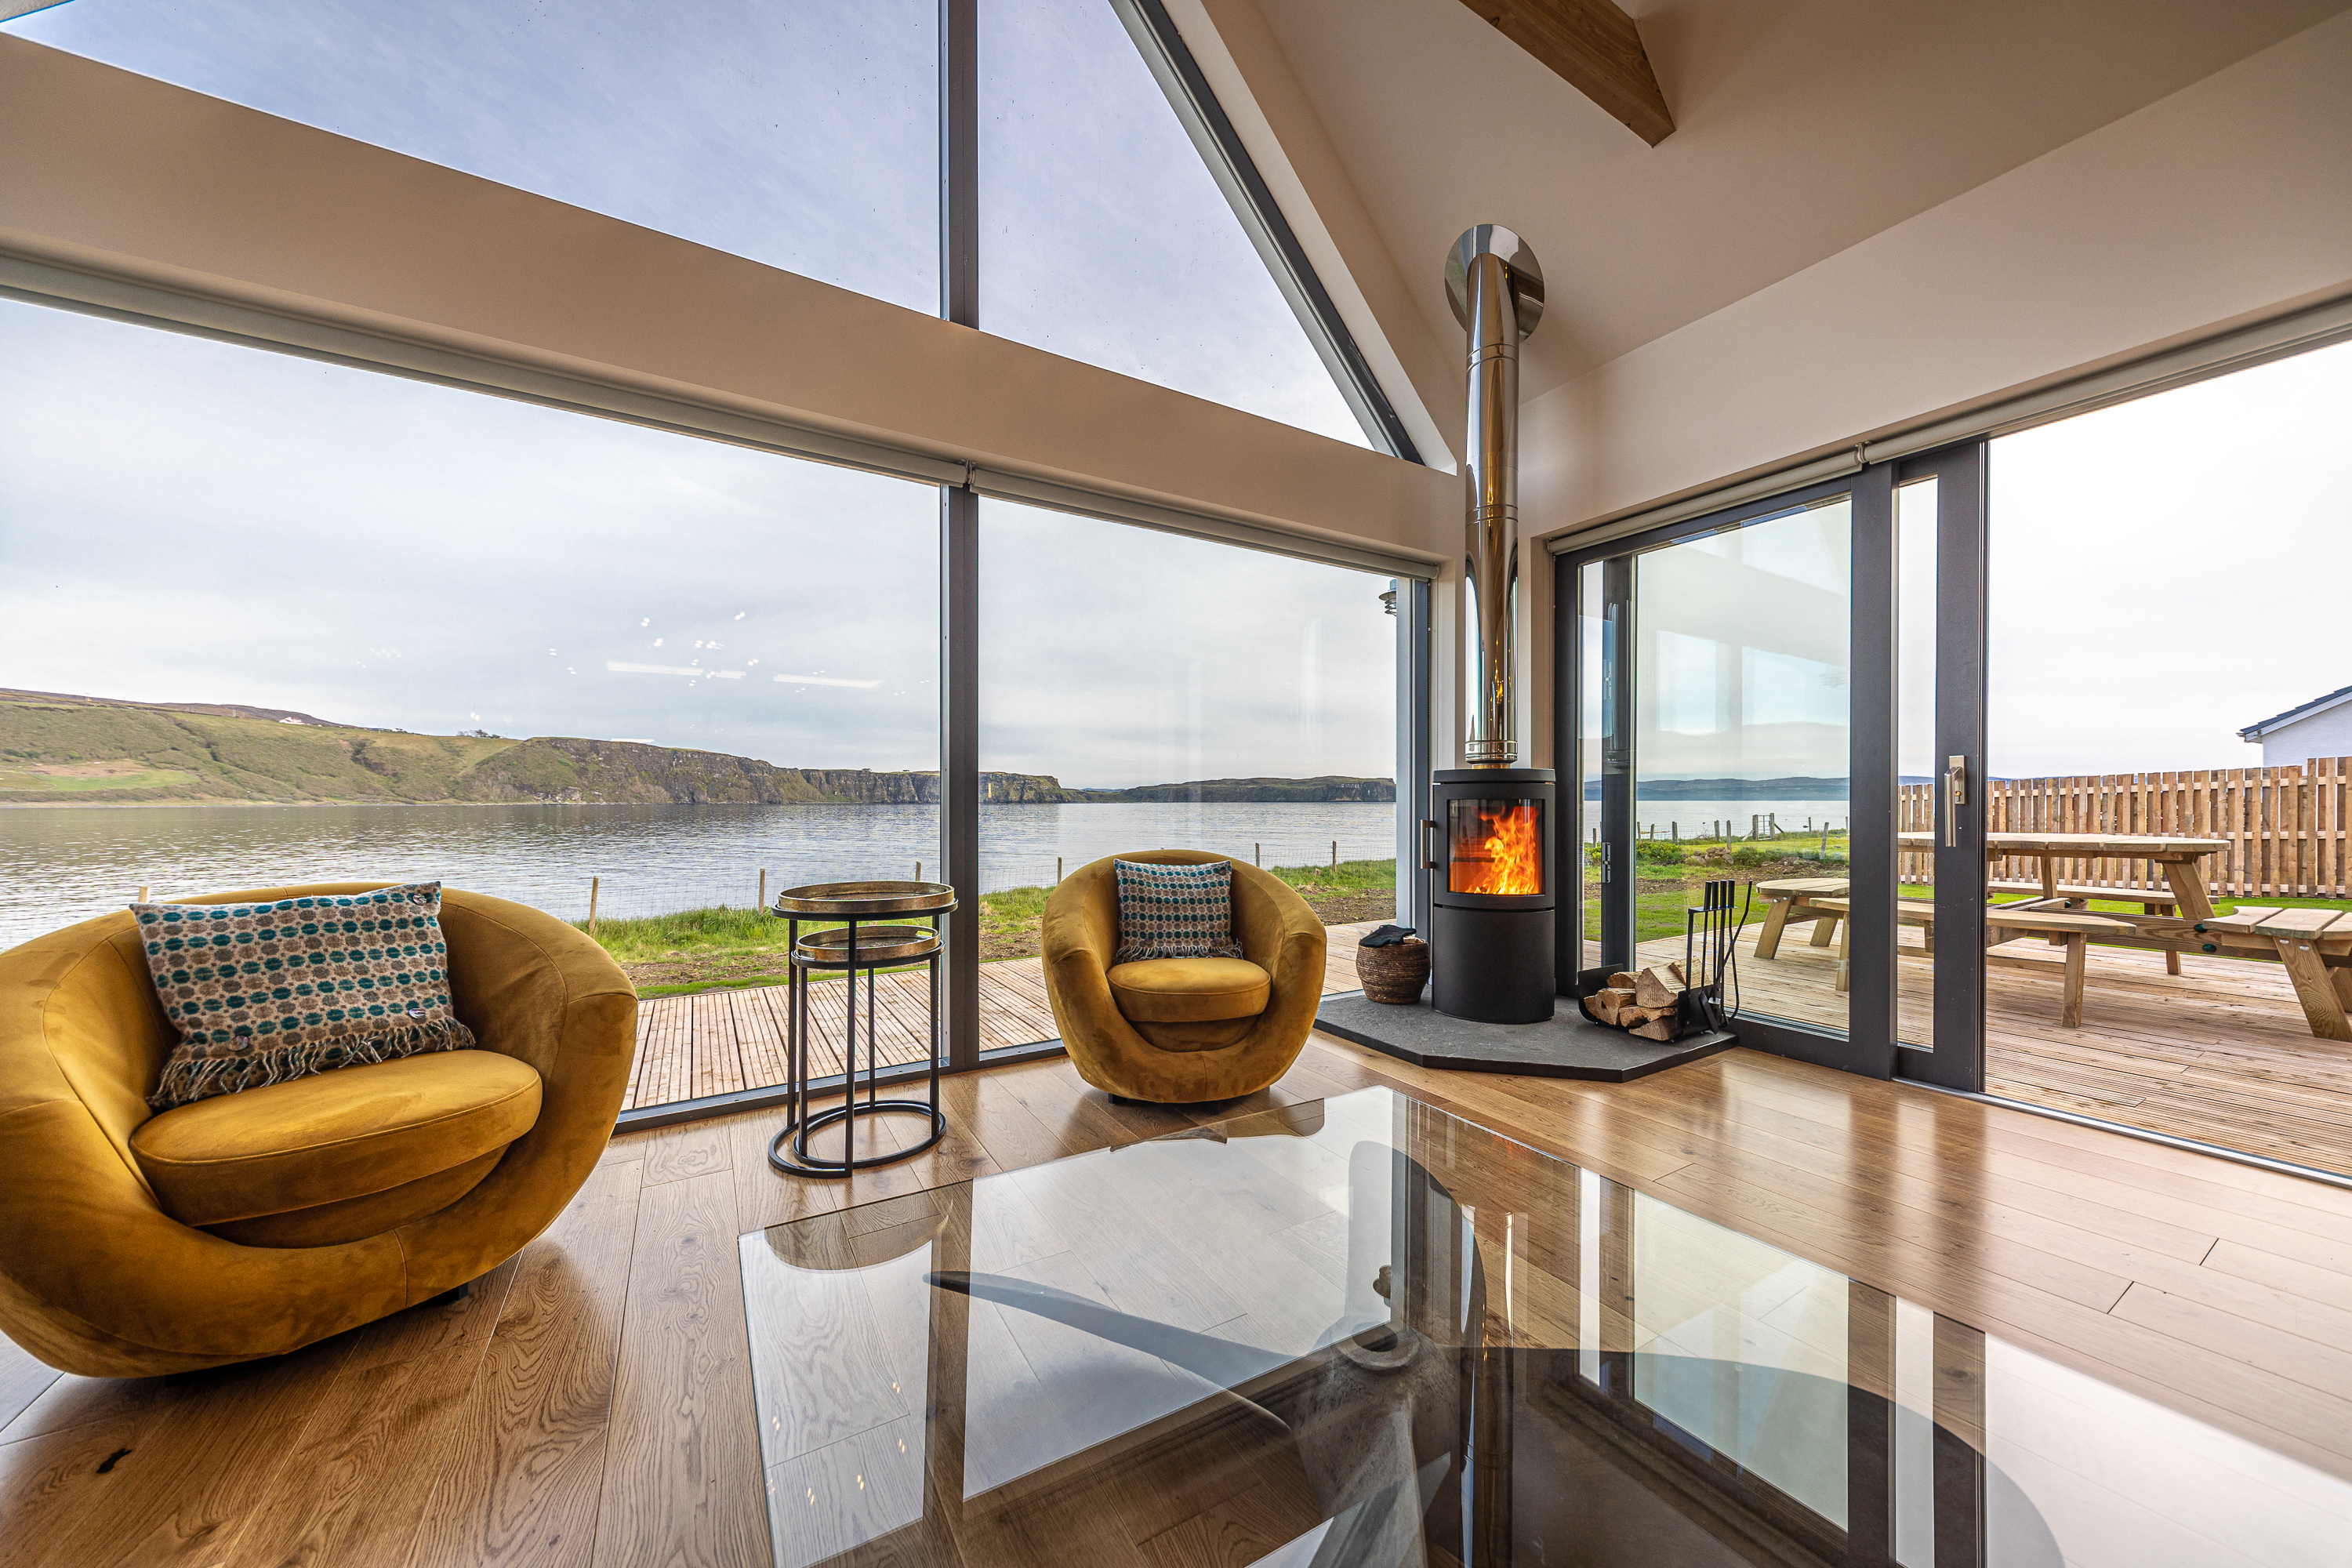 Als Gast der Unterkunft Isle of Skye können Sie von der Terrasse und dem Wohnzimmer aus Robben beobachten